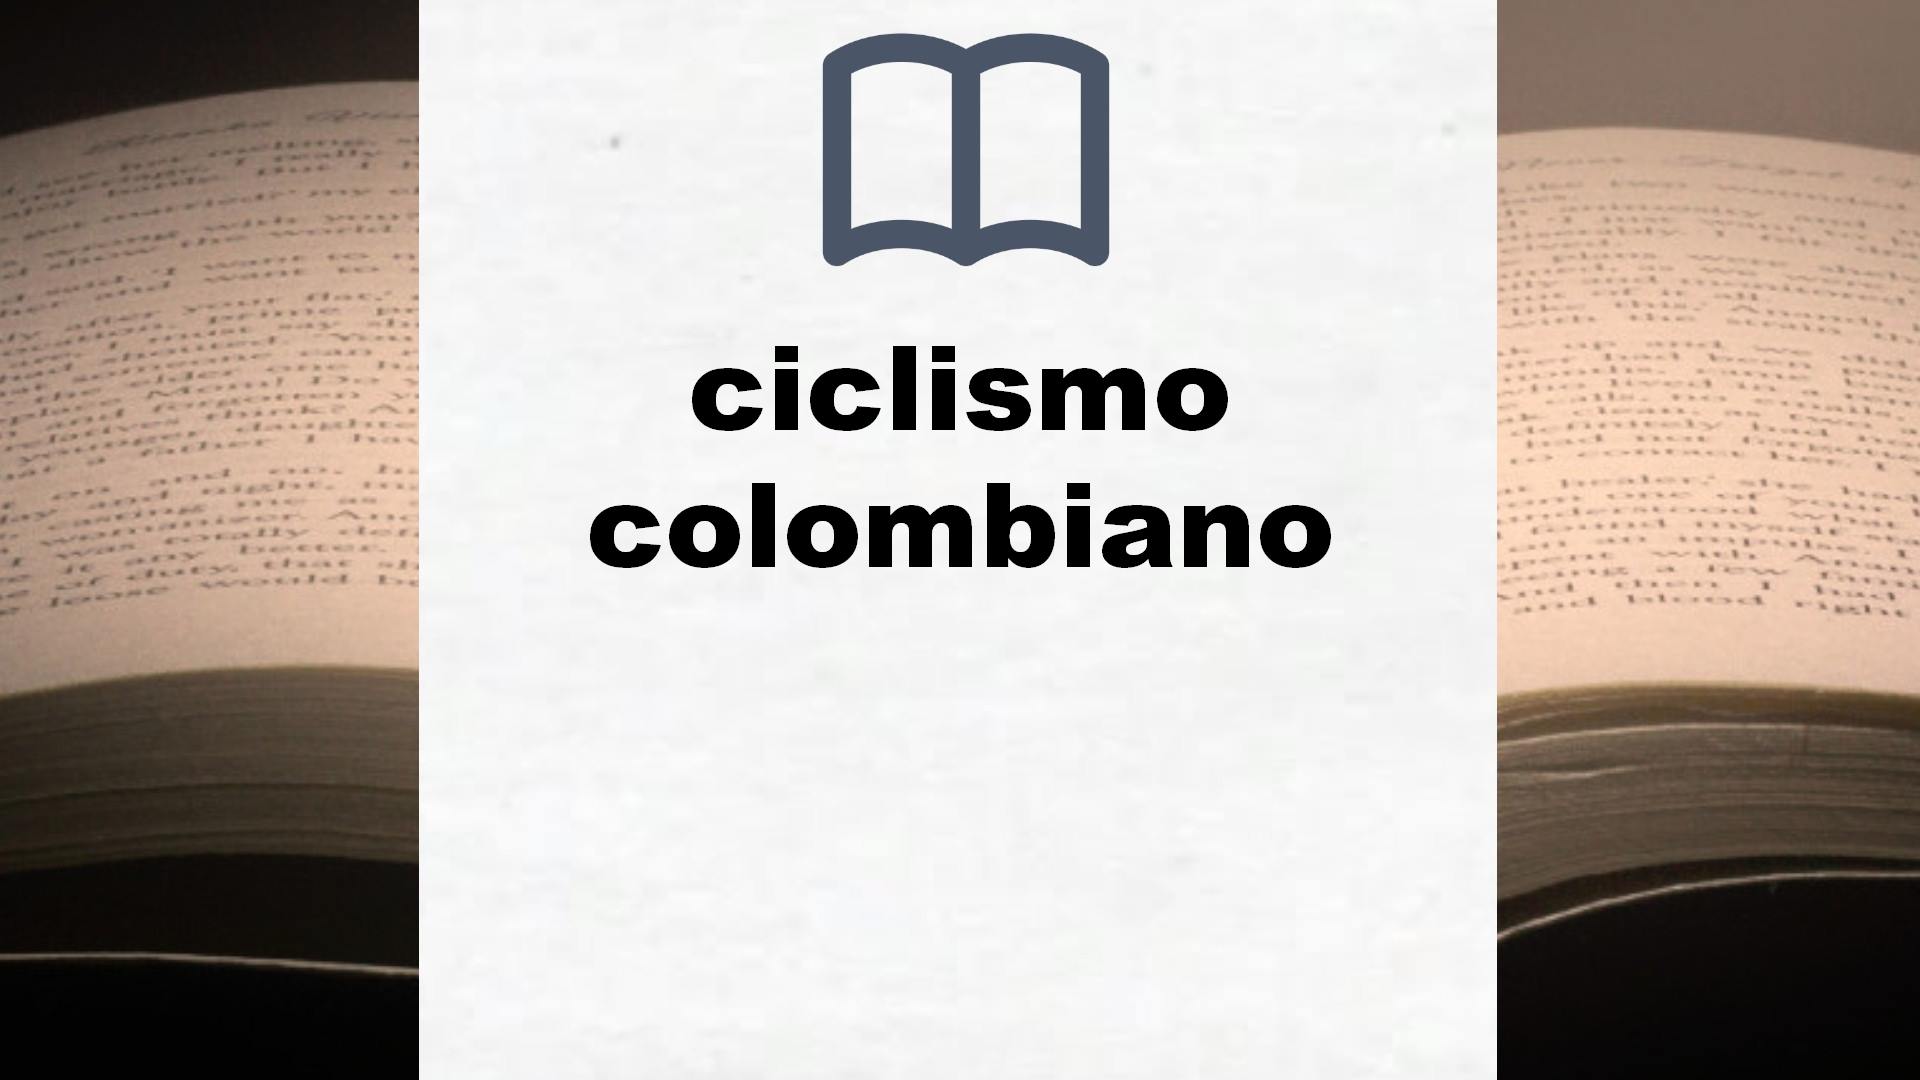 Libros sobre ciclismo colombiano